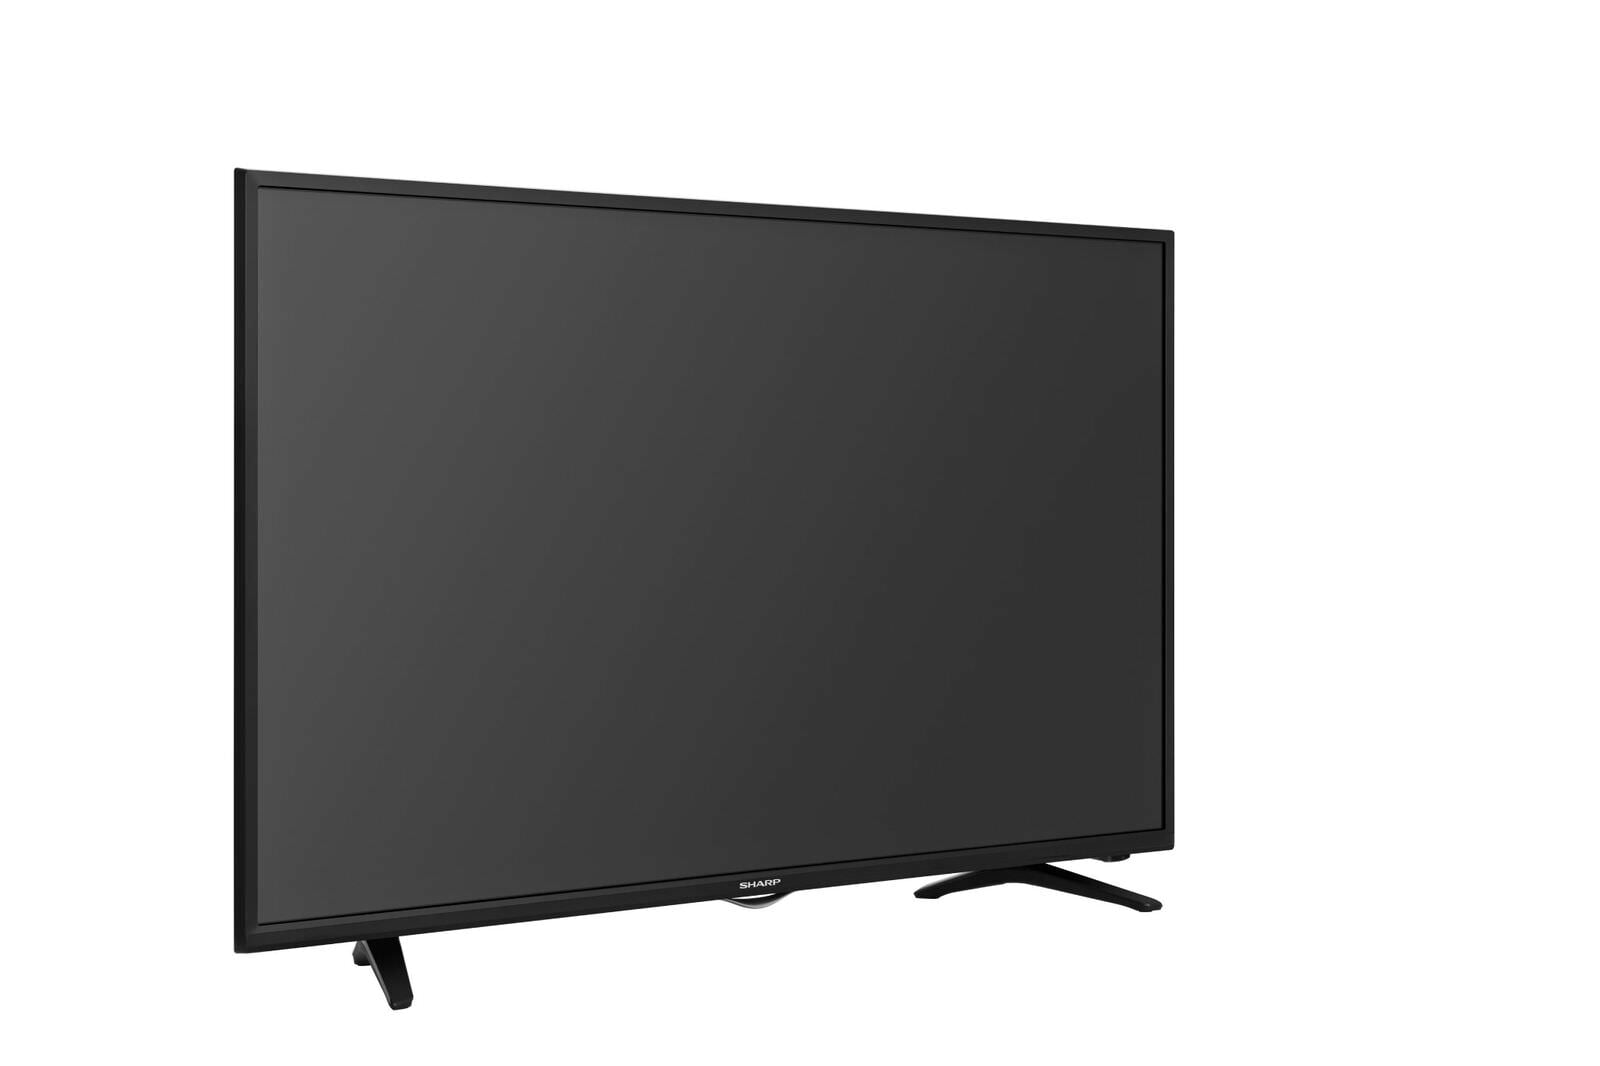 Sharp AQUOS 40" Class FHD (1080P) Smart LED TV Walmart.com